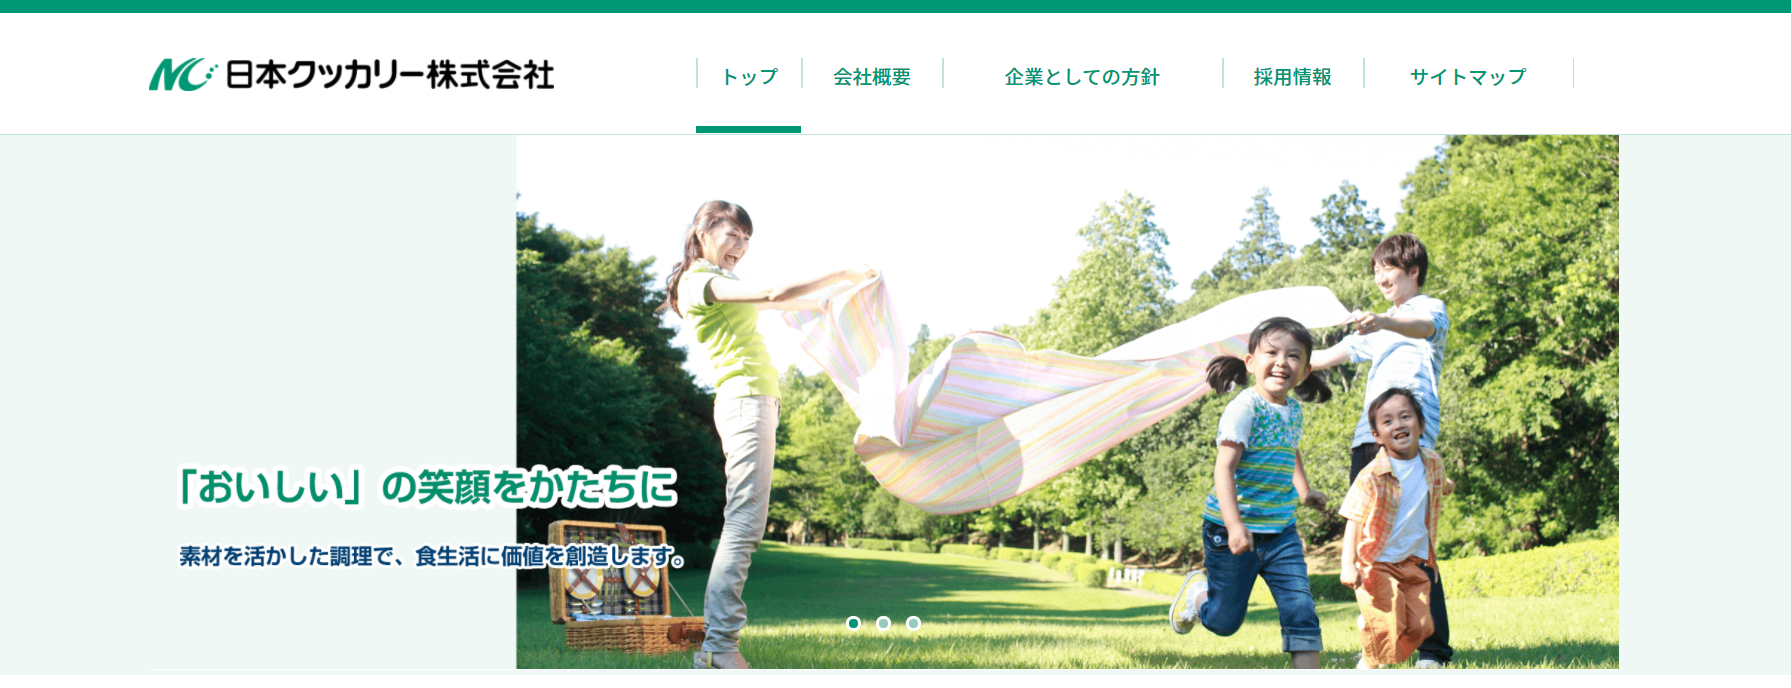 日本クッカリー株式会社 ホームページ キャプチャ画像